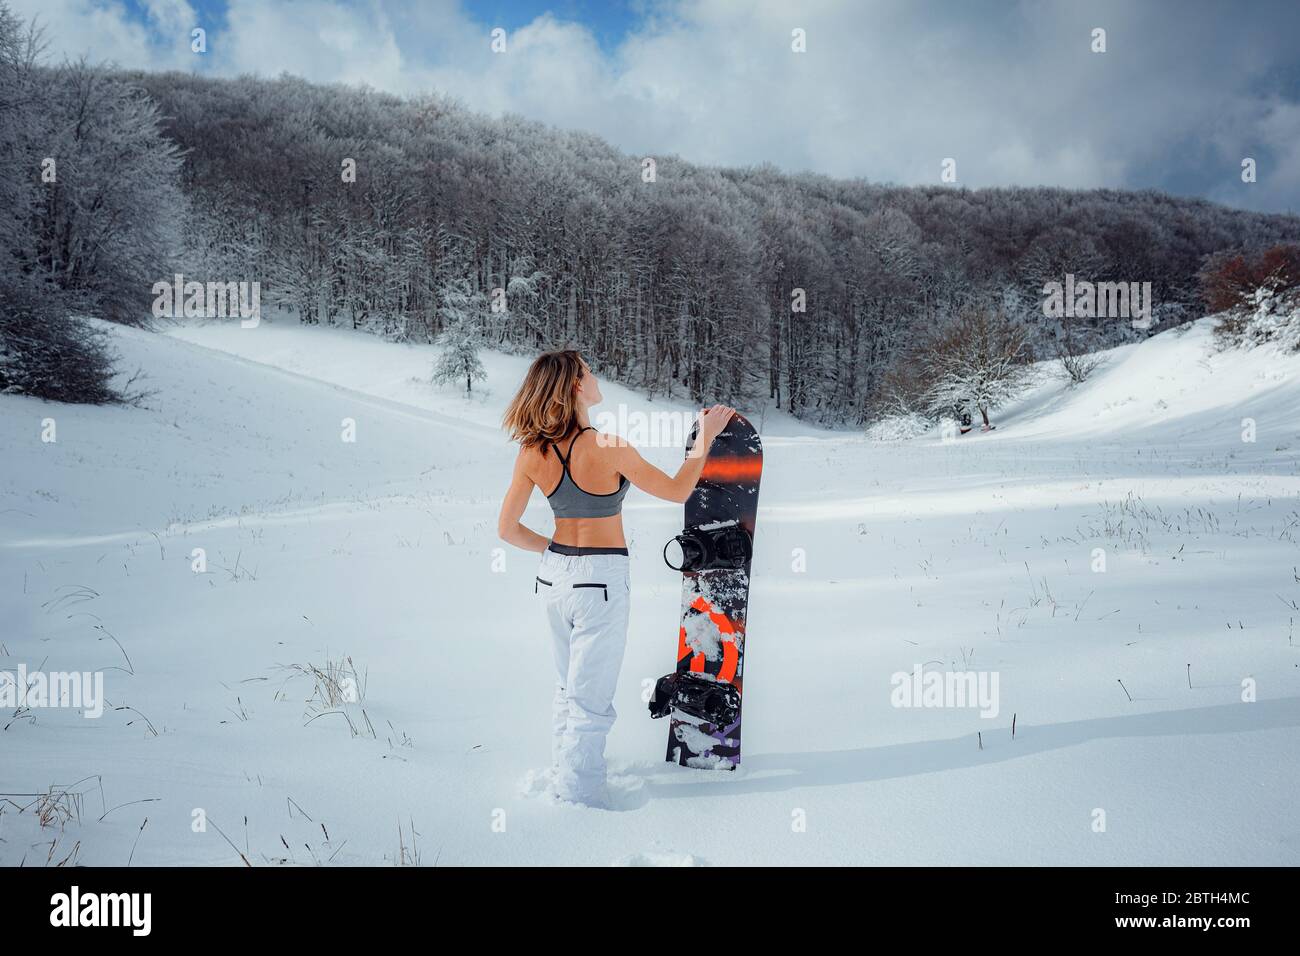 Snowboarder femenina sostiene snowboard e va a snowboard. Actividad deportiva de invierno, nieve en el bosque estilo de vida al aire libre. Chica con una camiseta corta y esquí w Foto de stock